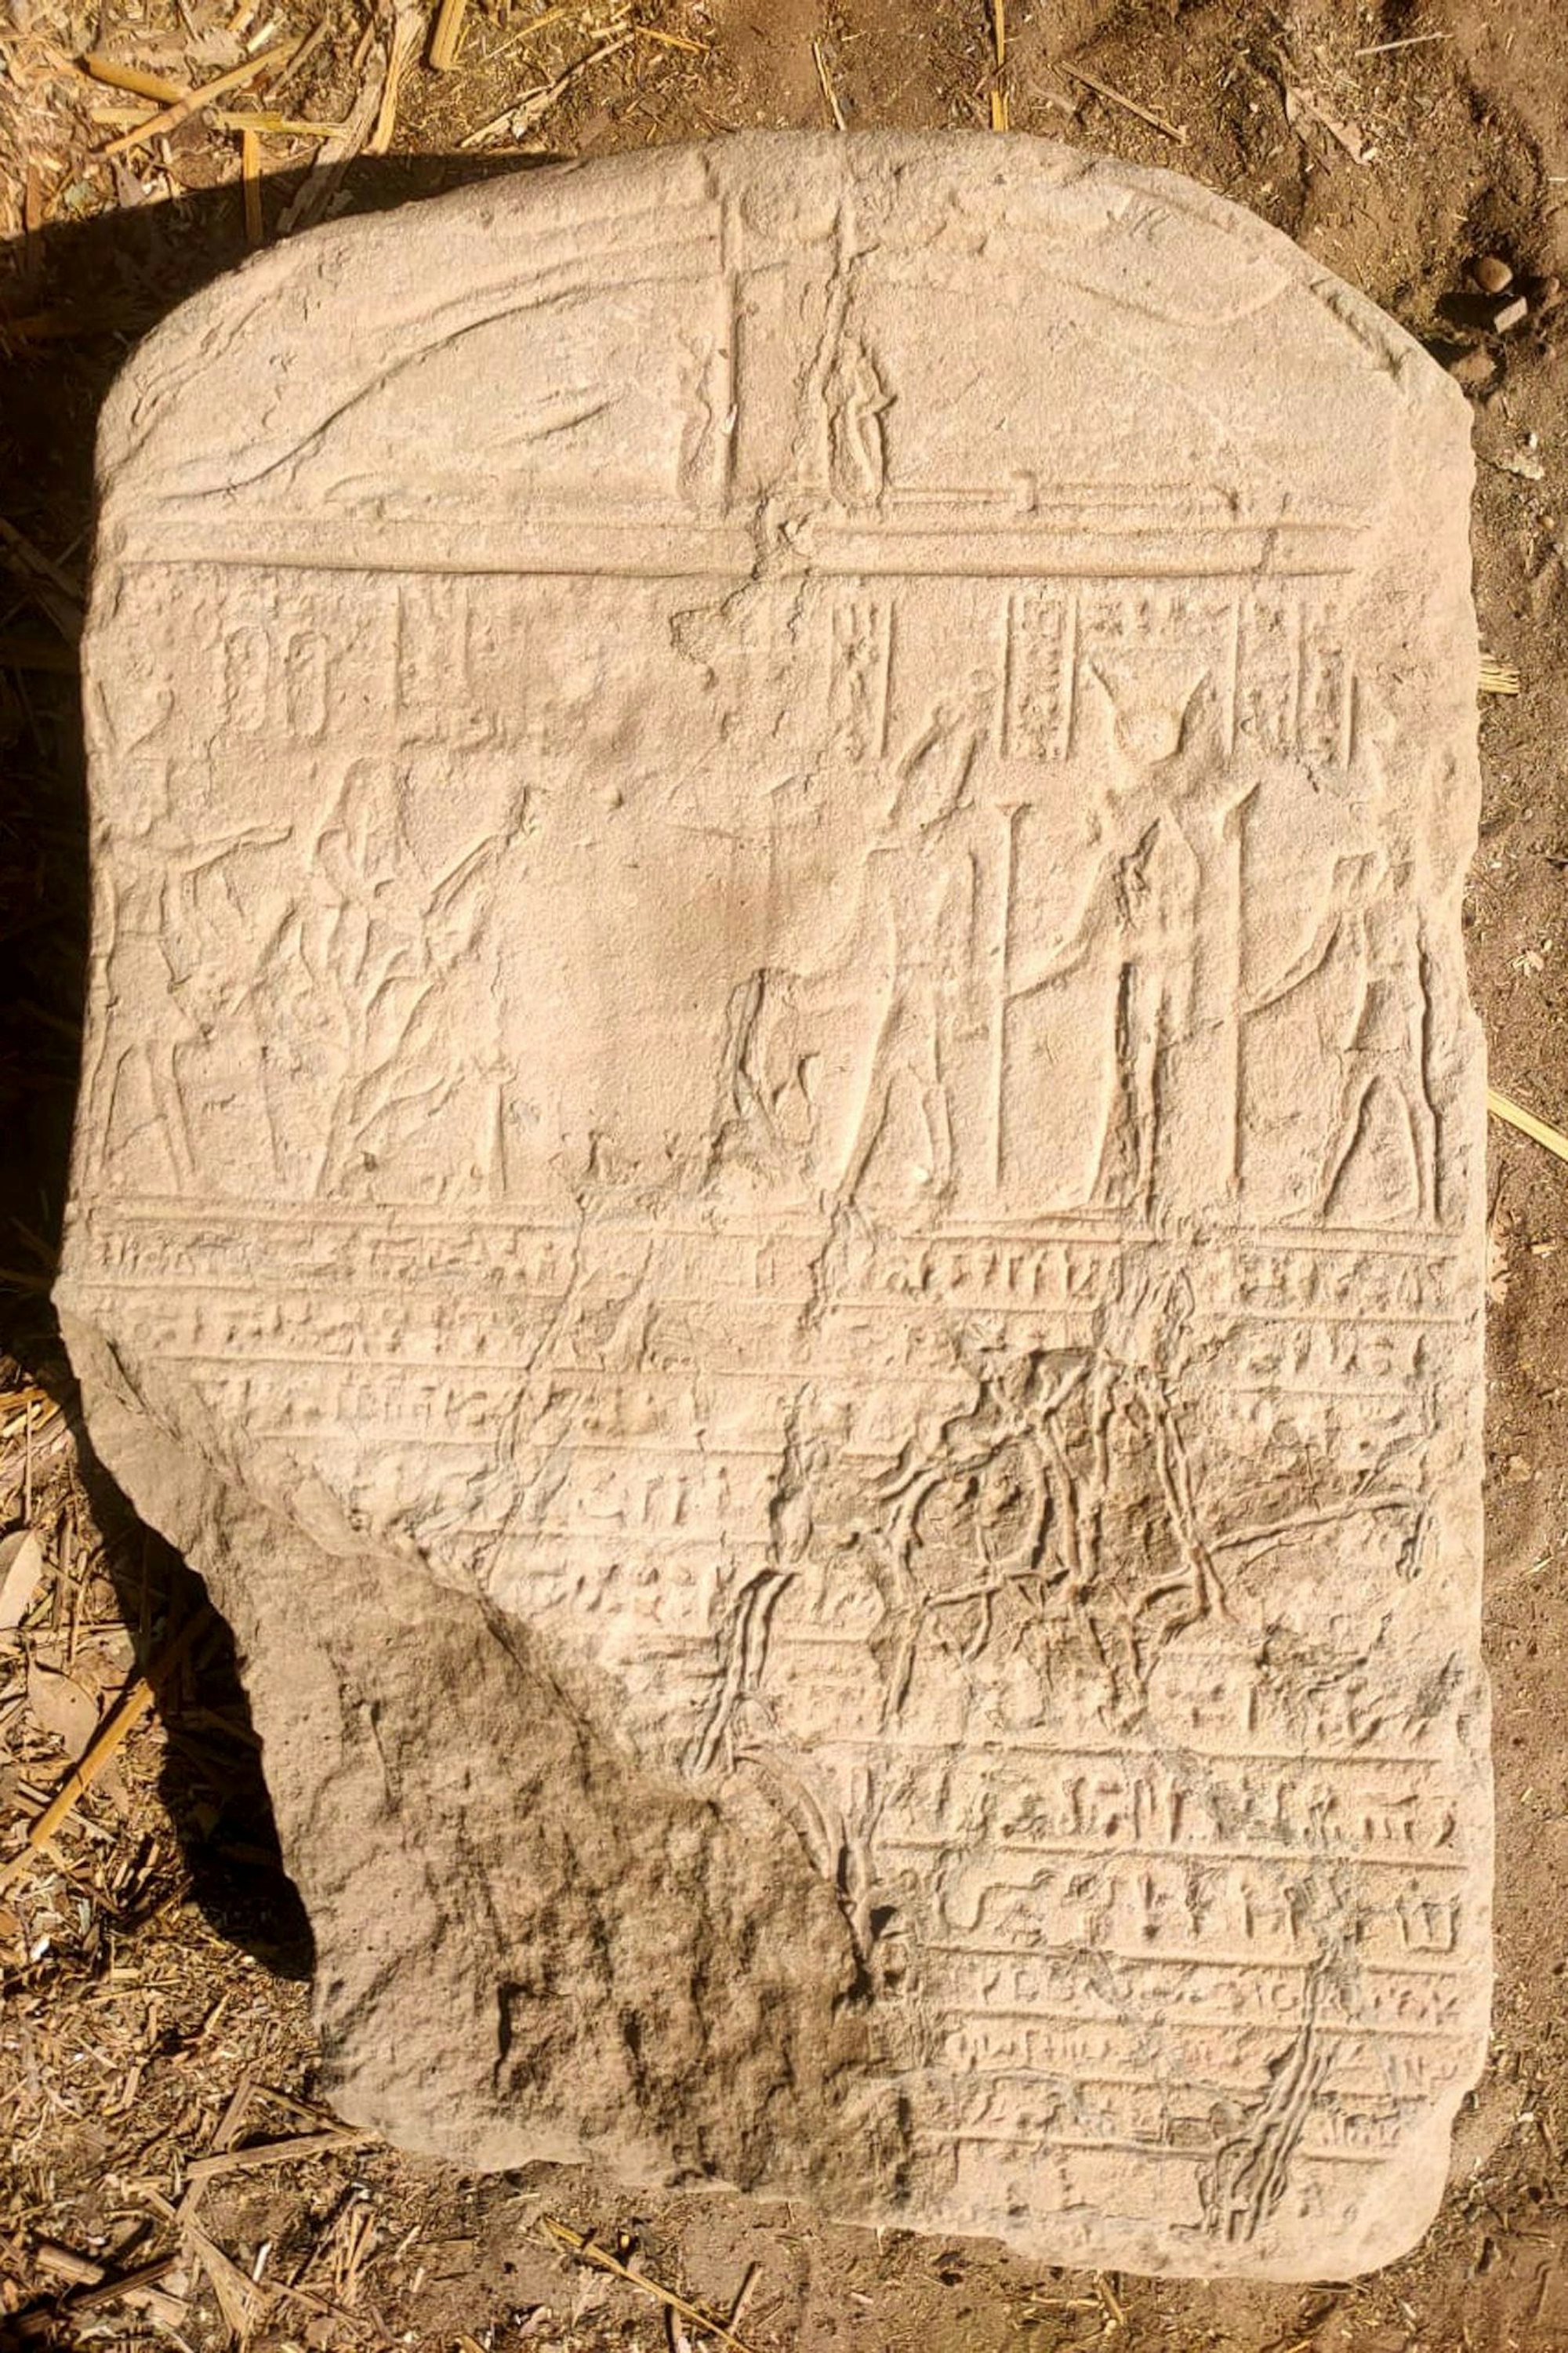 Ein weiterer Fund: eine Stele mit altägyptischen Inschriften und Hieroglyphen.